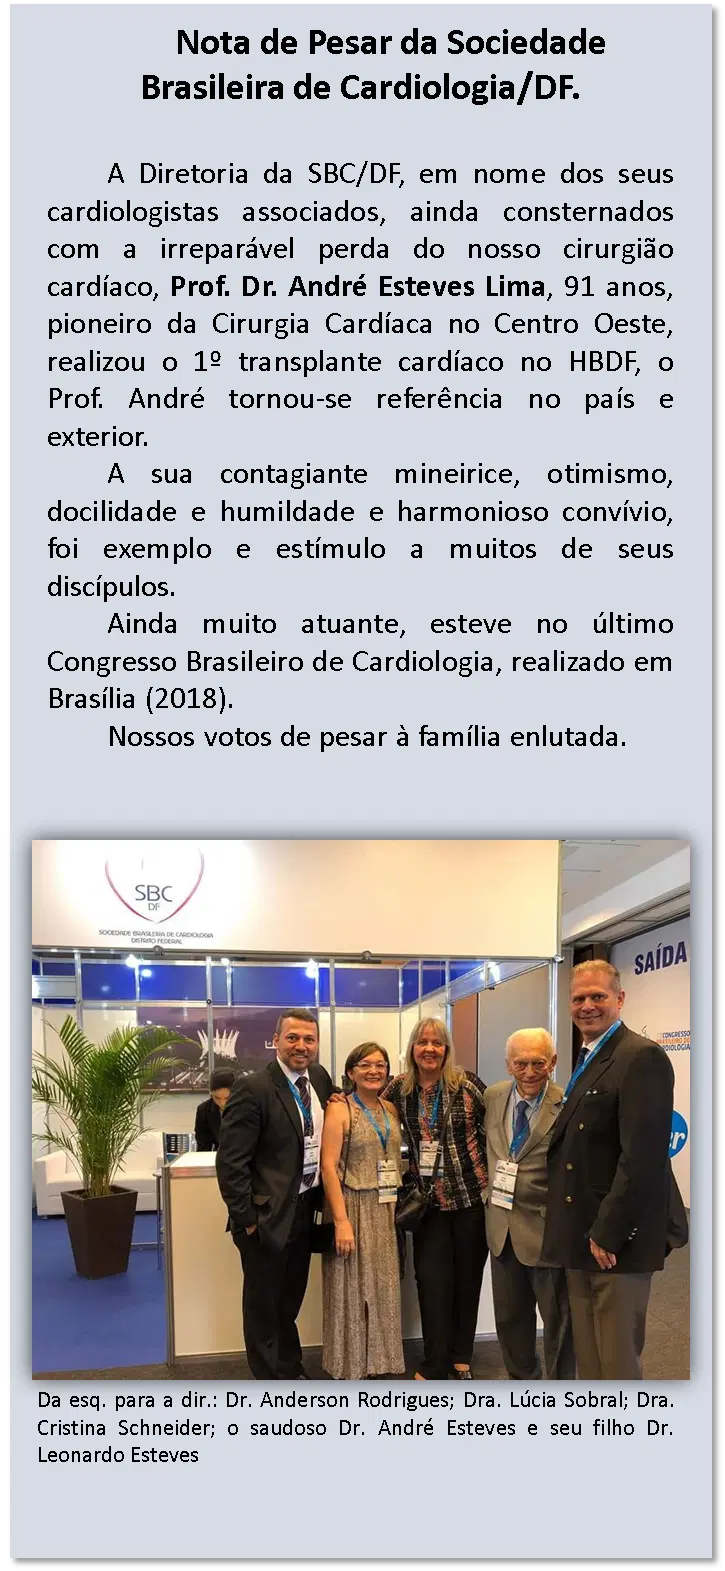 Nota de pesar da Sociedade Brasileira de Cardiologia/DF